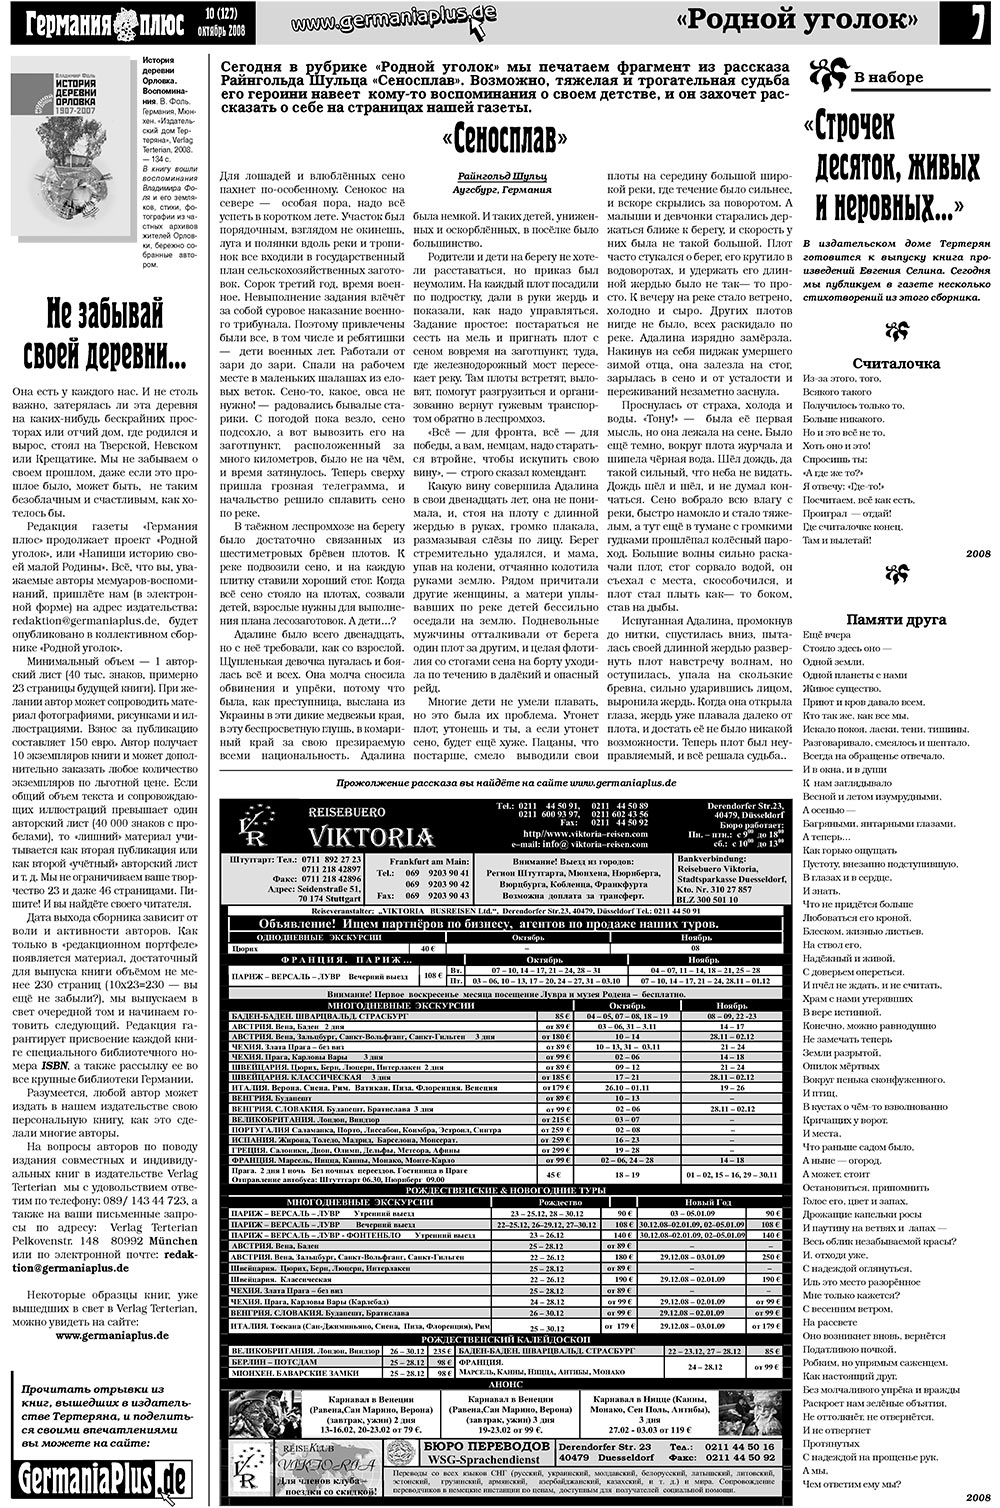 Германия плюс, газета. 2008 №10 стр.7